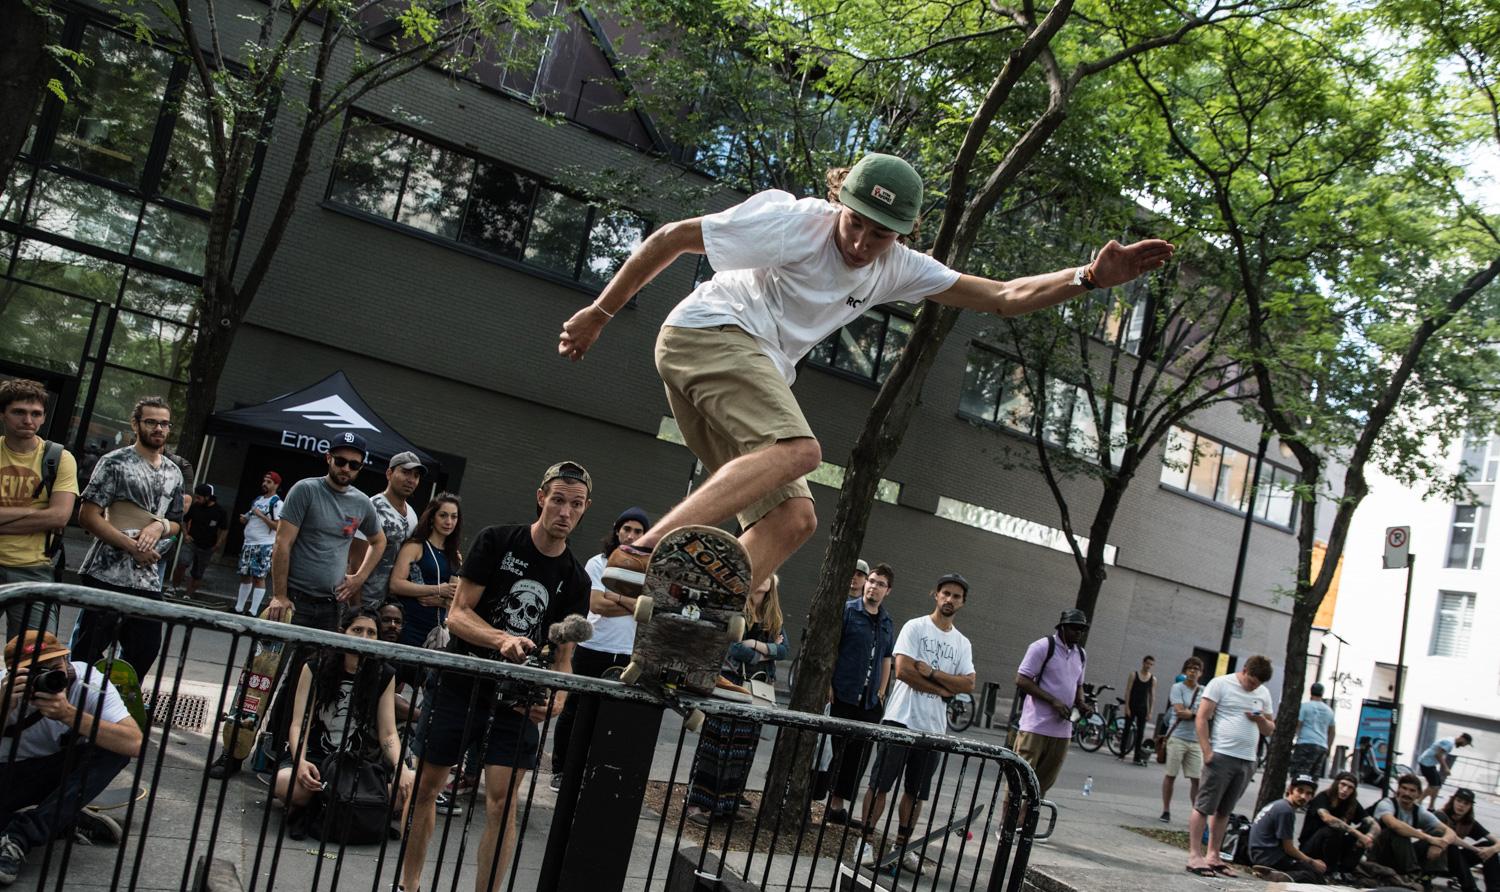 La Descente de skateboard dans les rues de Montréal célèbre sa deuxième édition!